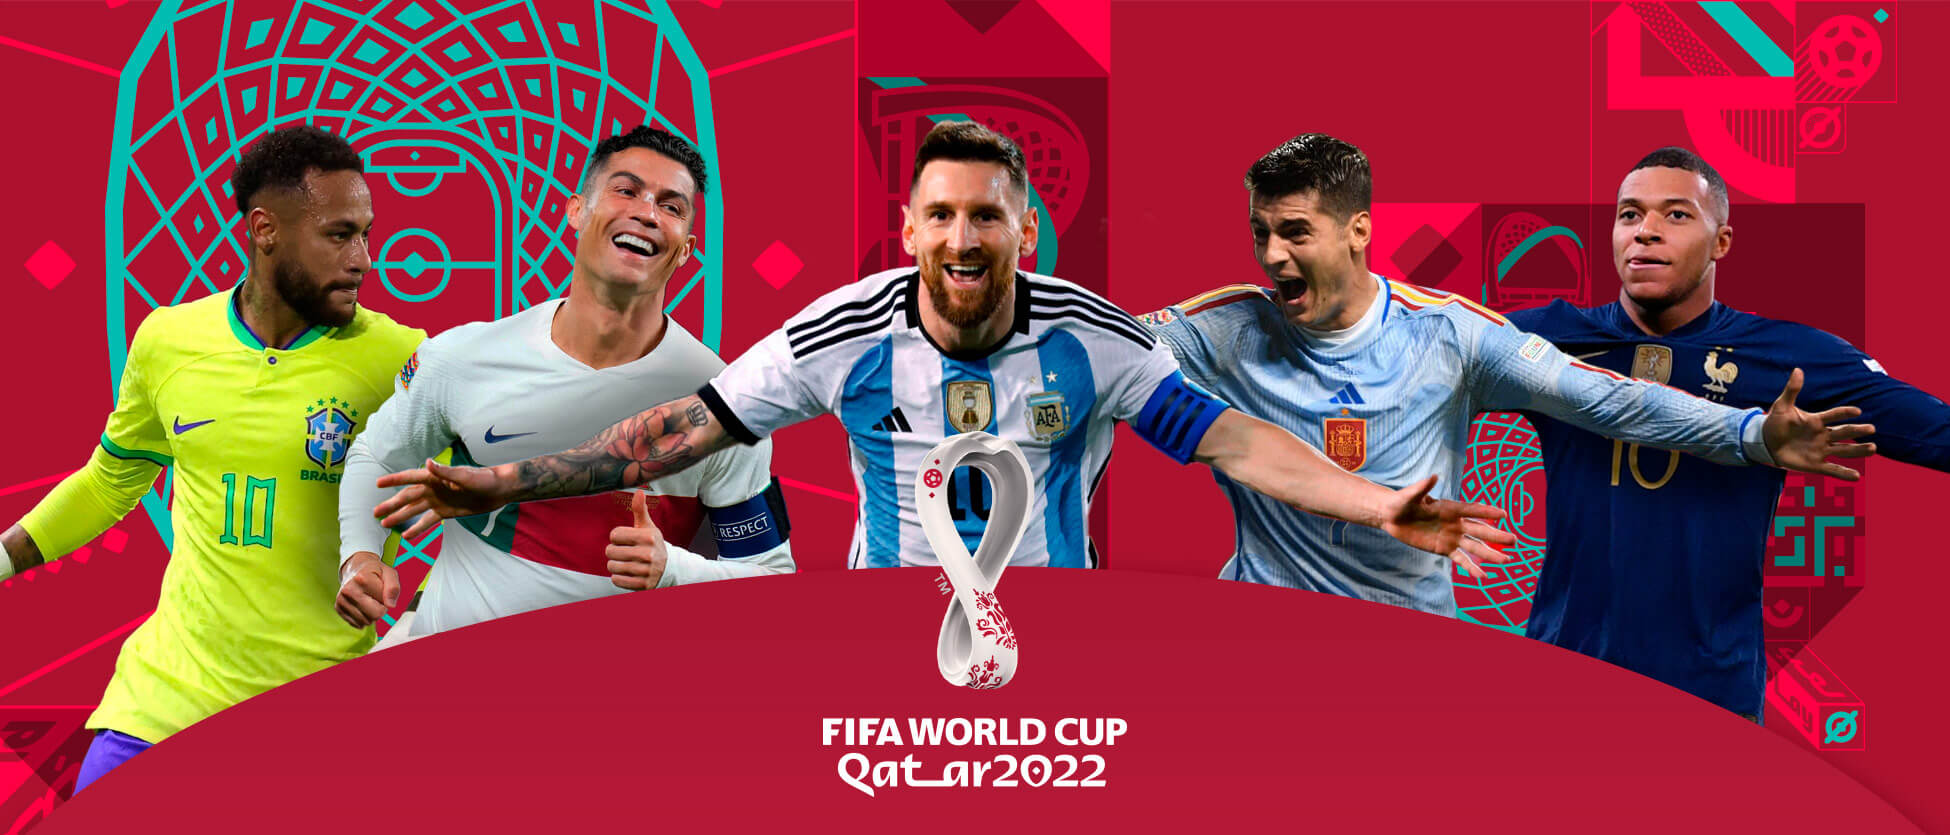 Svjetsko prvenstvo u nogometu Katar 2022